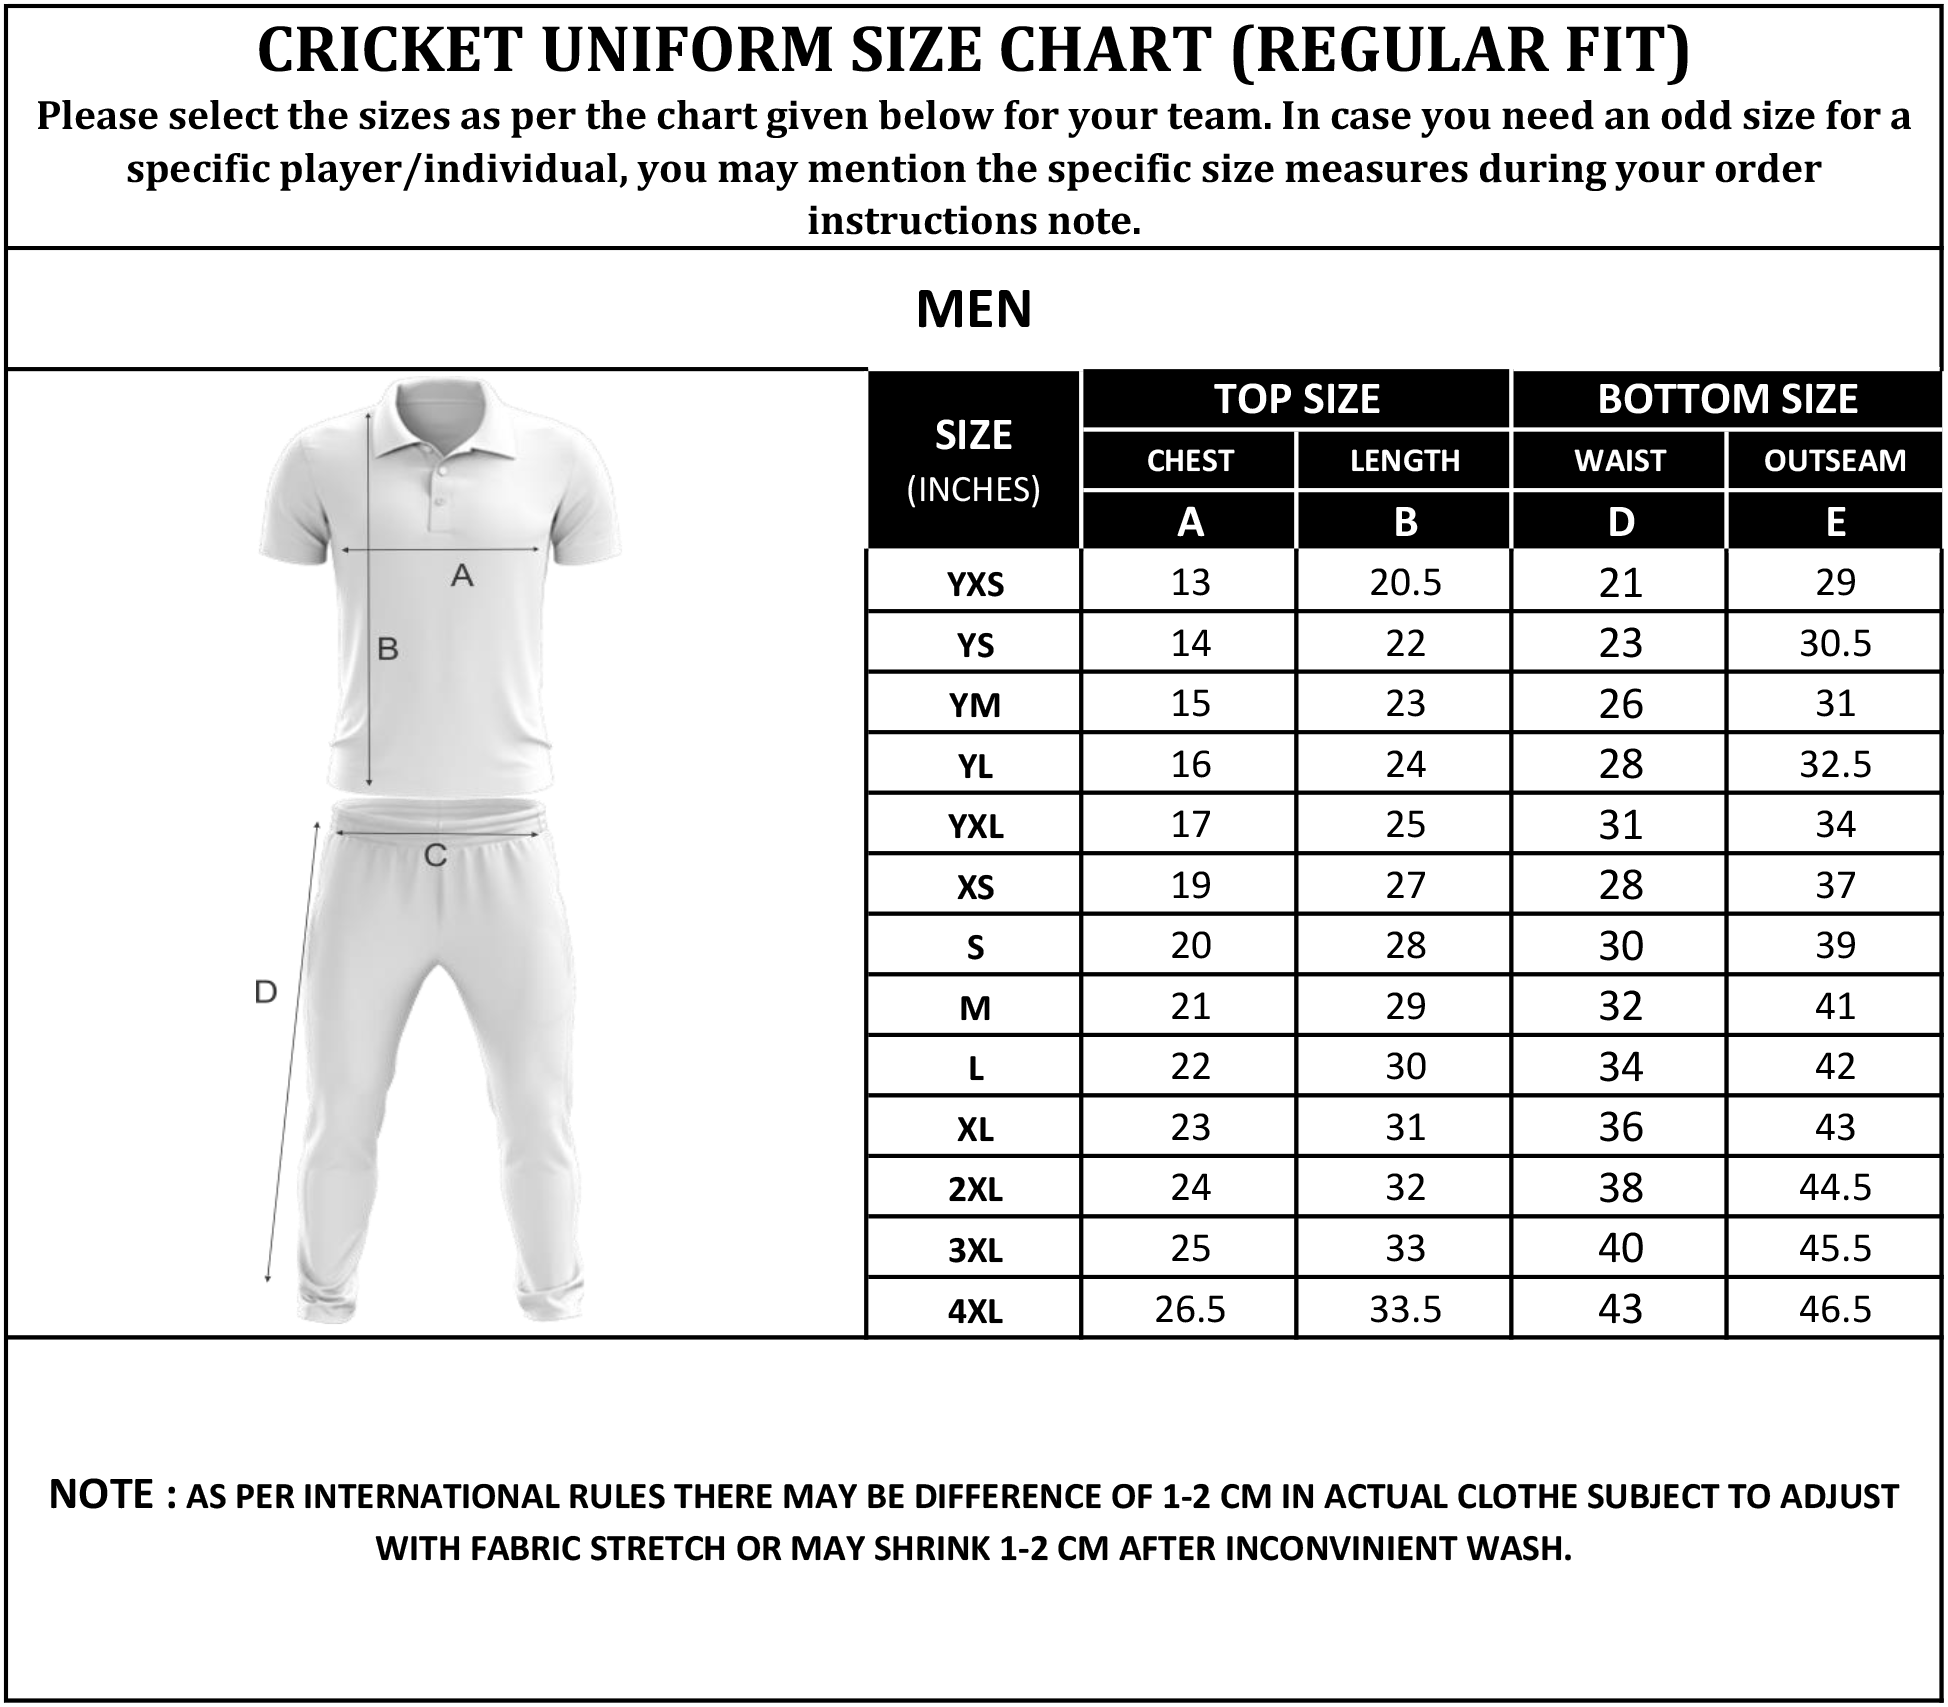 Size Chart of Cricket Wear